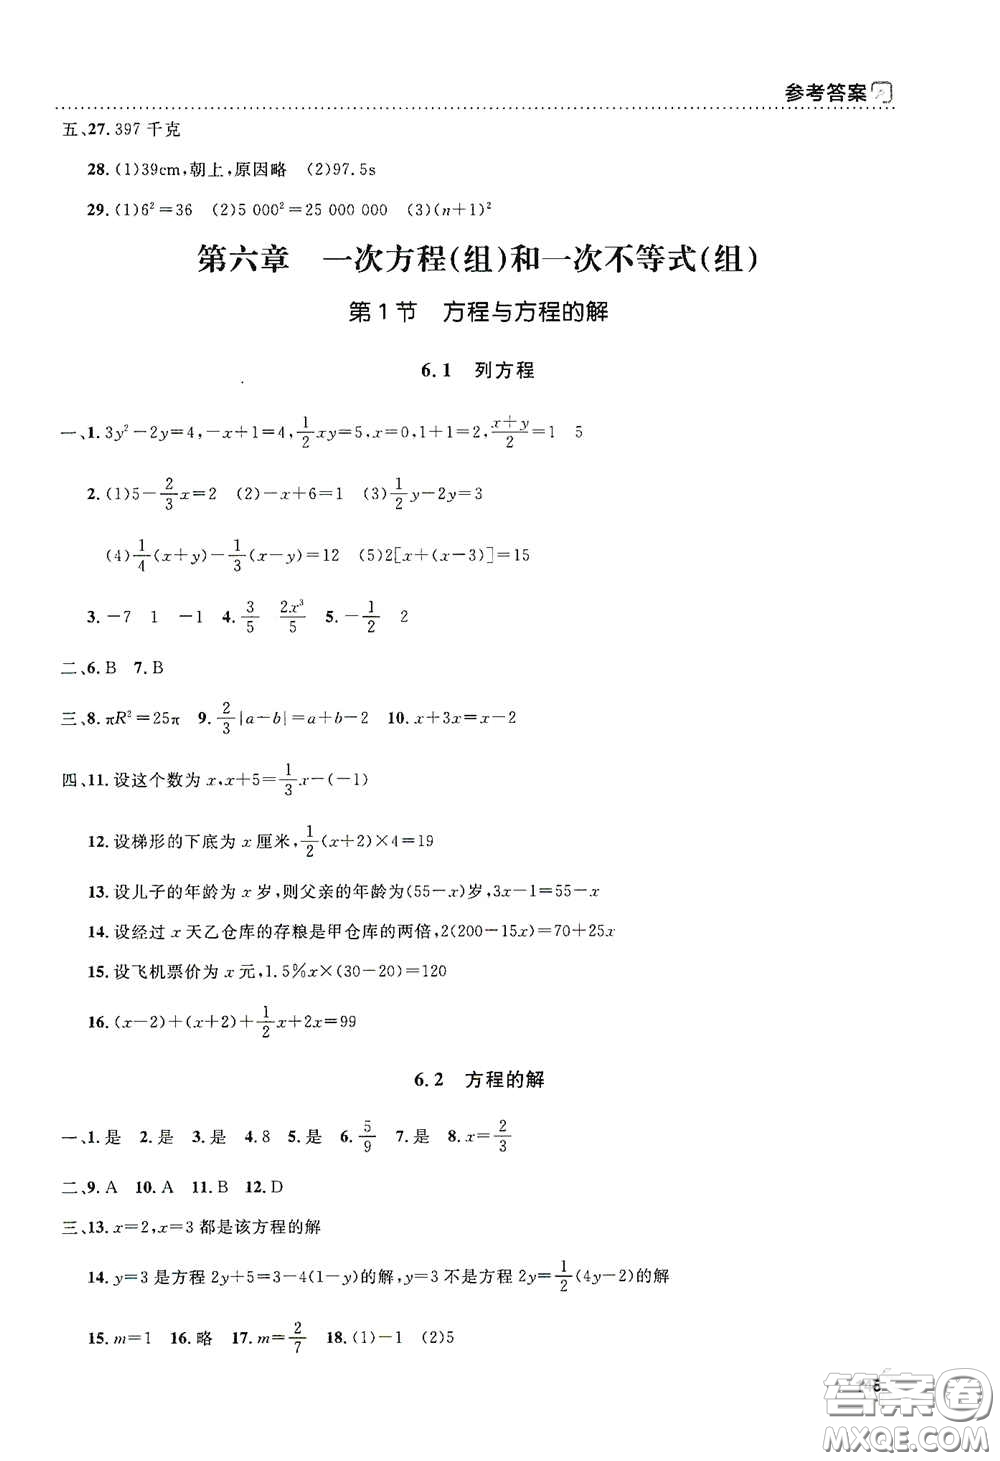 上海大学出版社2021钟书金牌上海作业六年级数学下册全新修订版答案